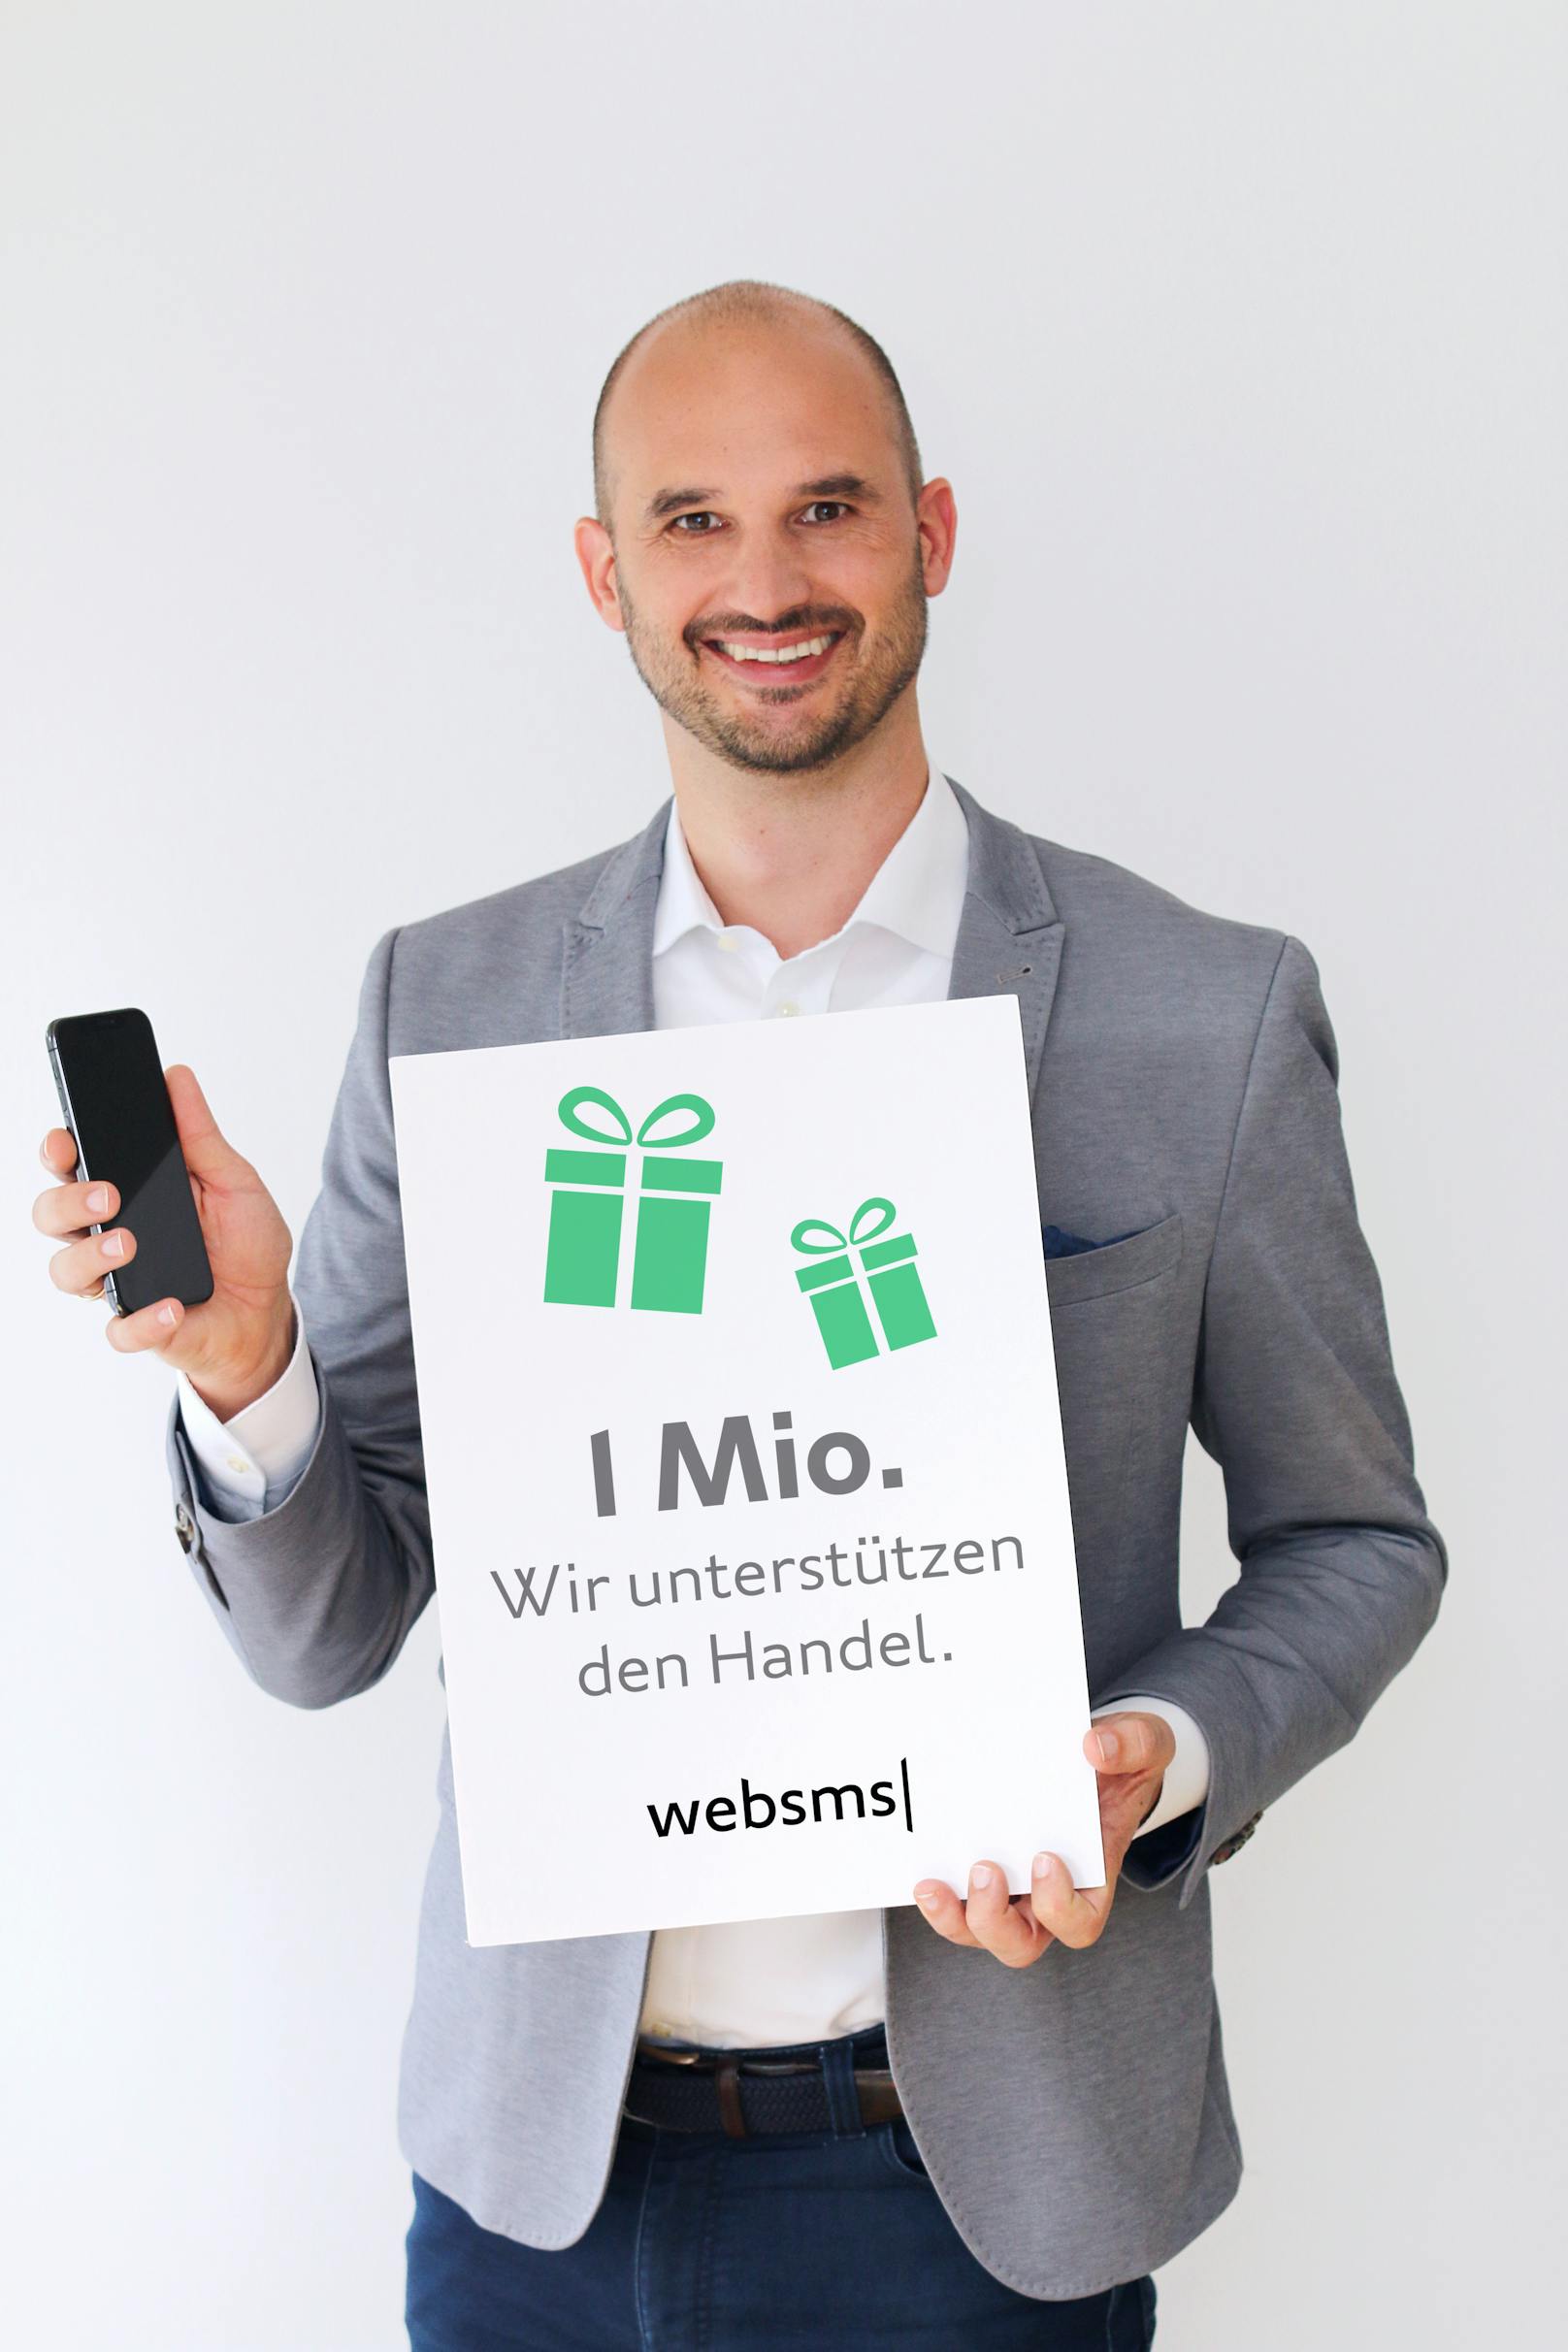 websms unterstützt österreichischen Handel mit einer Million kostenlosen SMS-Nachrichten.